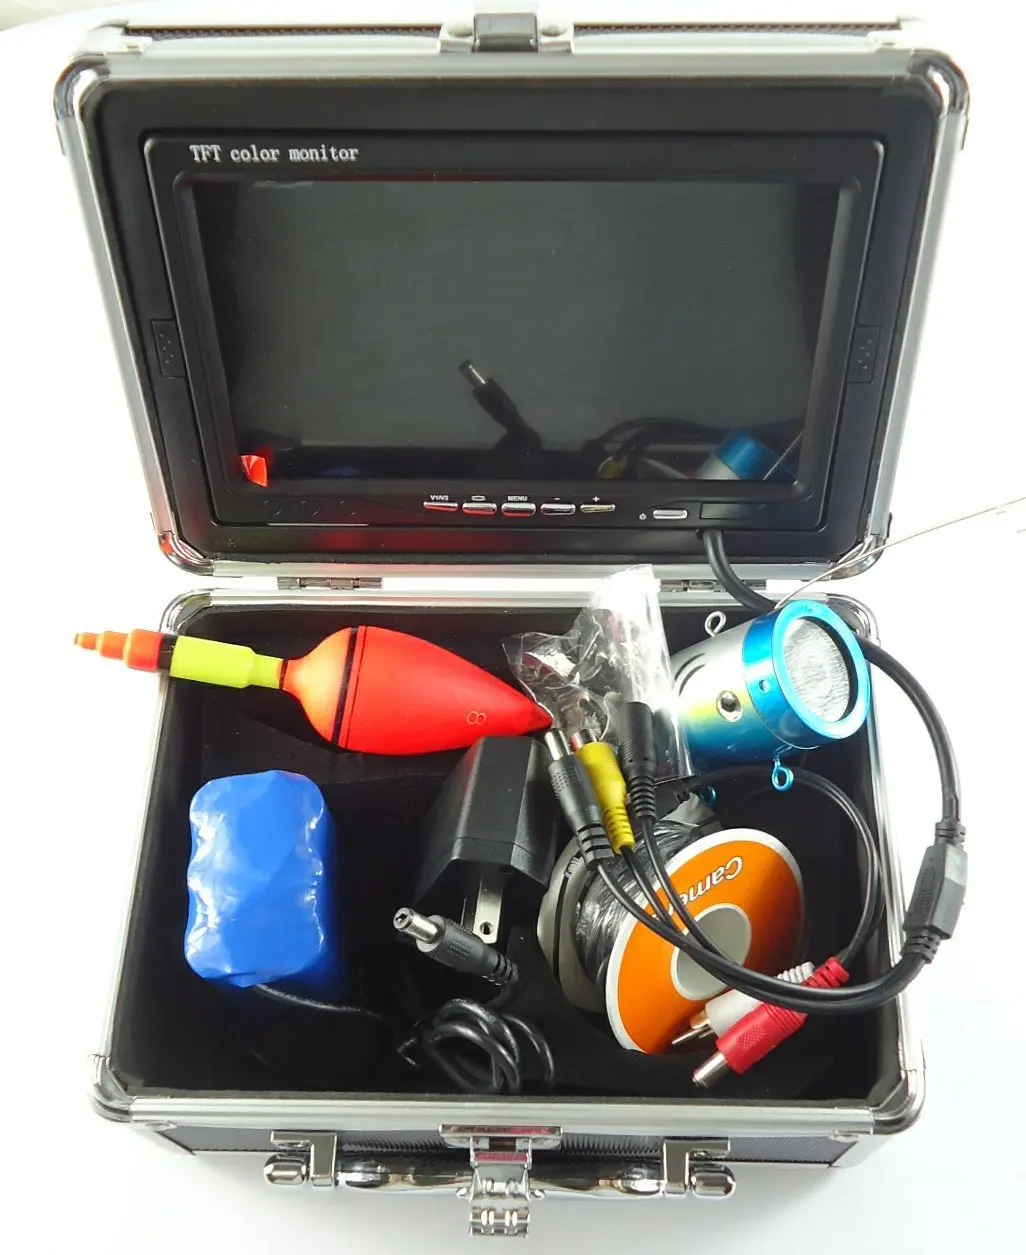 Монитор для камеры для рыбалки. Подводная камера для рыбалки 700 ТВЛ. Подводная камера Underwater Camera Fish Finder. Камера подводная «Fish Finder» z1. Подводная камера TFT Color Monitor для рыбалки.